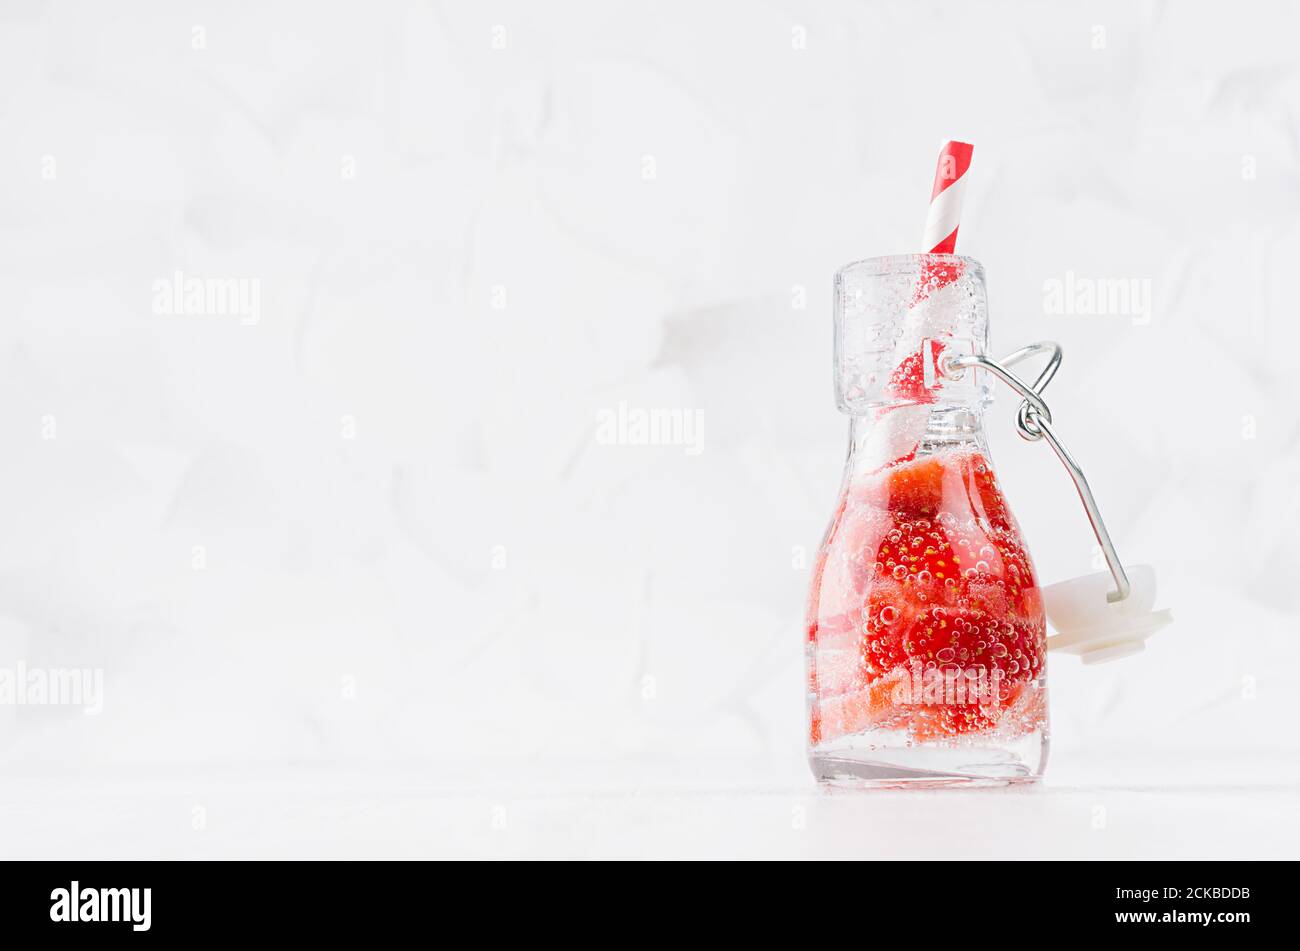 Frische Erdbeerlimonade mit geschnittener Beere, Sodawasser, Stroh in transparenter Yoke-Flasche auf weichem hellweißem Holztisch, Kopierraum. Stockfoto